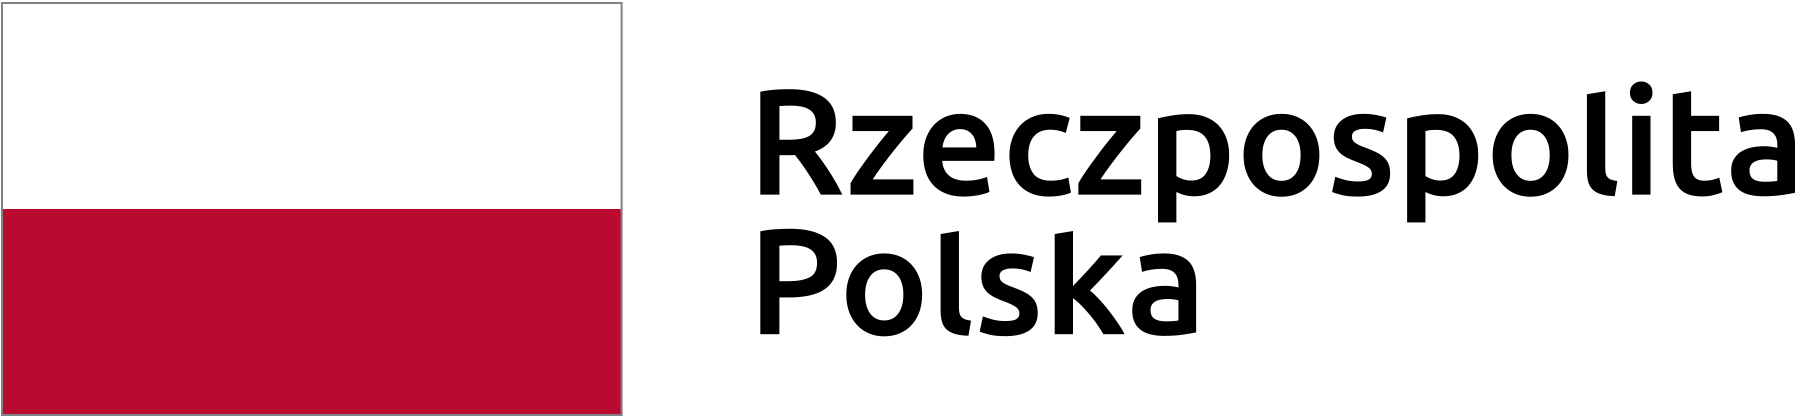 Po lewej stronie graficzny znak flagi Rzeczypospolitej Polskiej. Po prawej stronie czarny napis Rzeczpospolita Polska